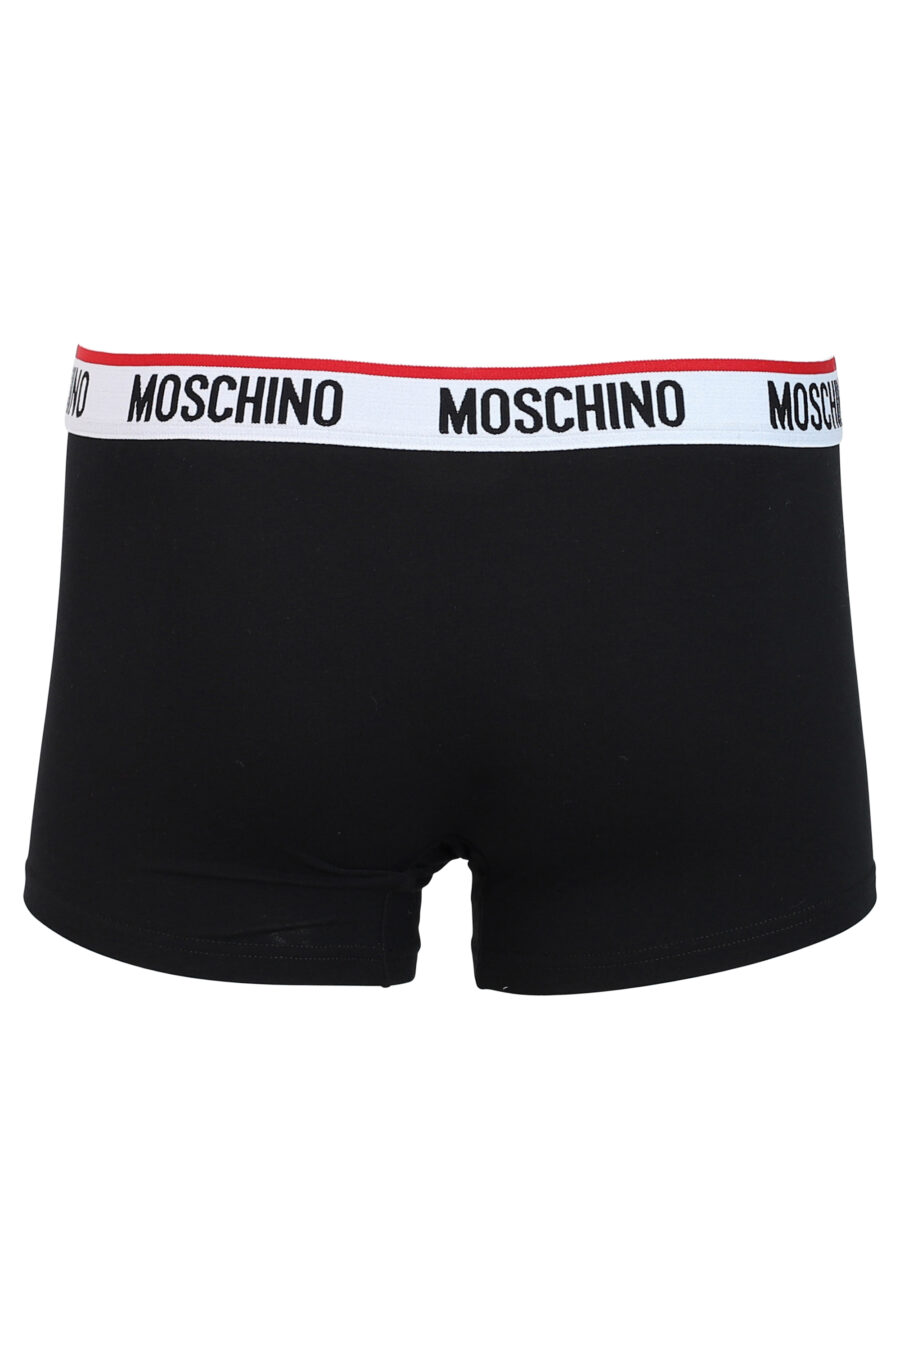 Pack de dos boxers negros y blancos con logo negro y rojo en cinturilla - IMG 0355